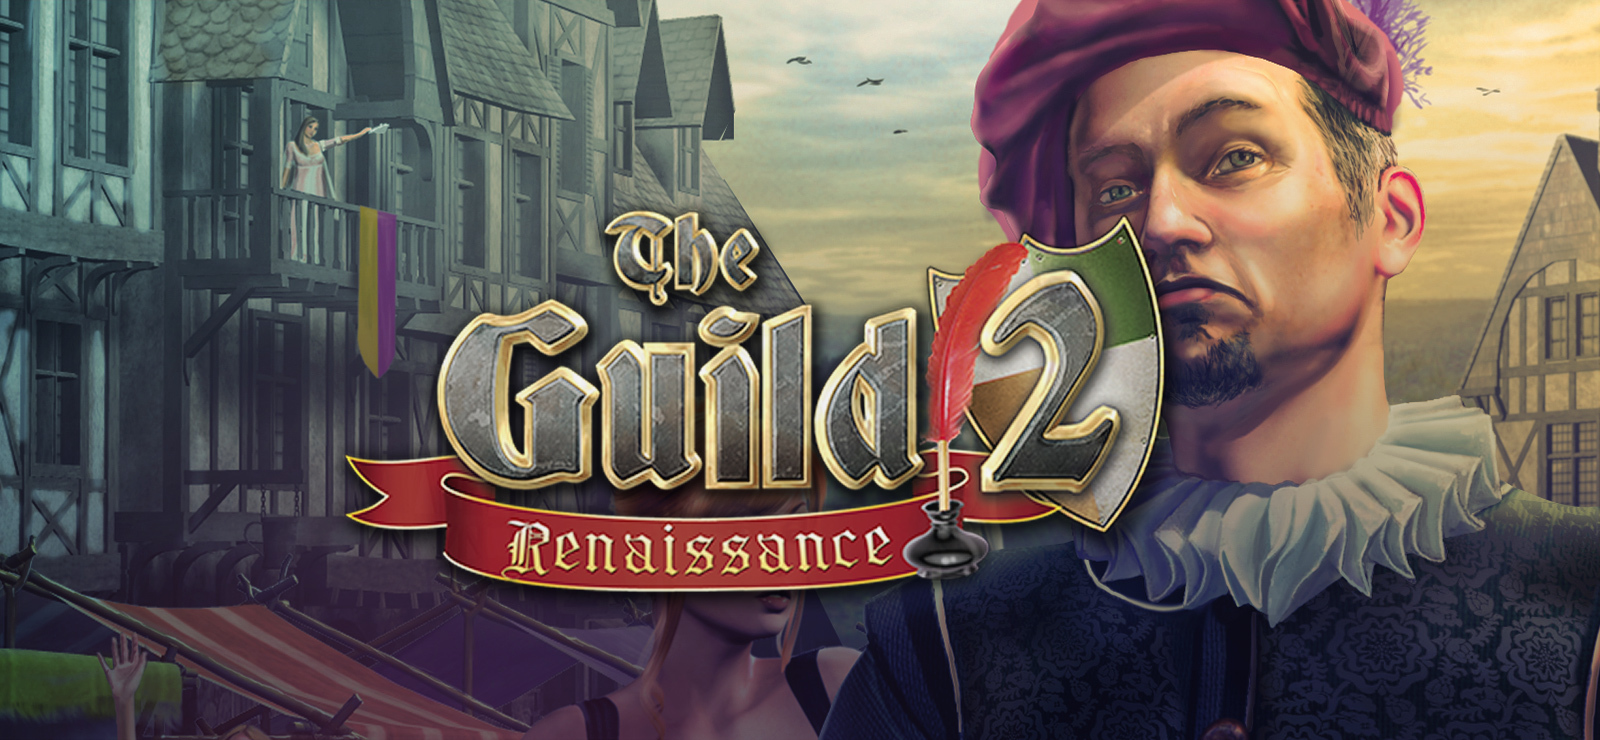 the guild 2 renaissance black screen